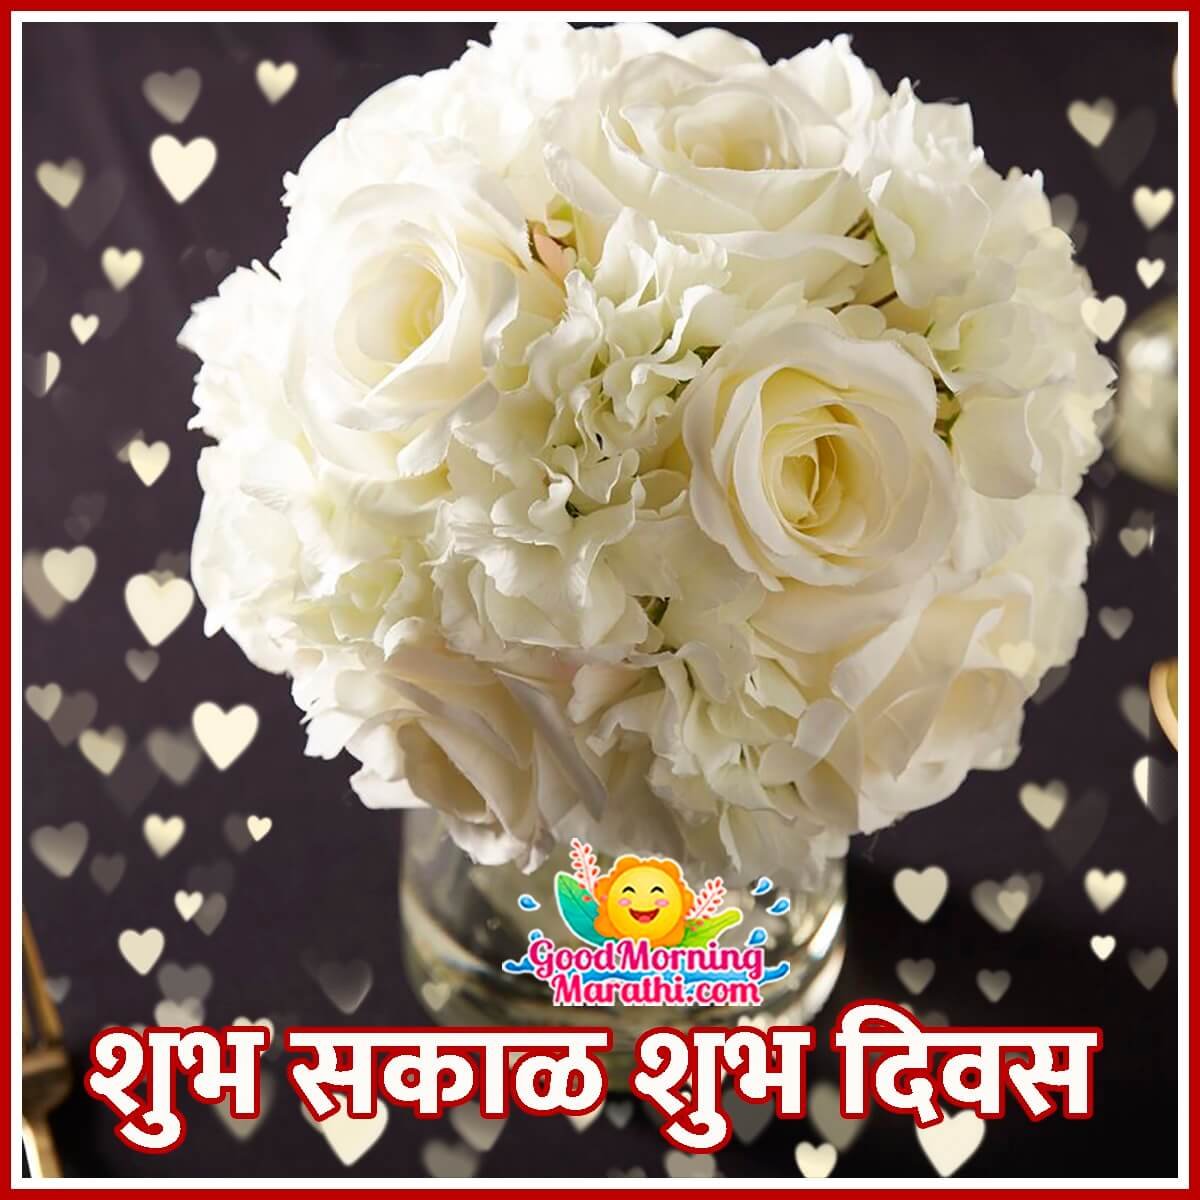 Good Morning Marathi Flowers Images - Good Morning Wishes & Images ...